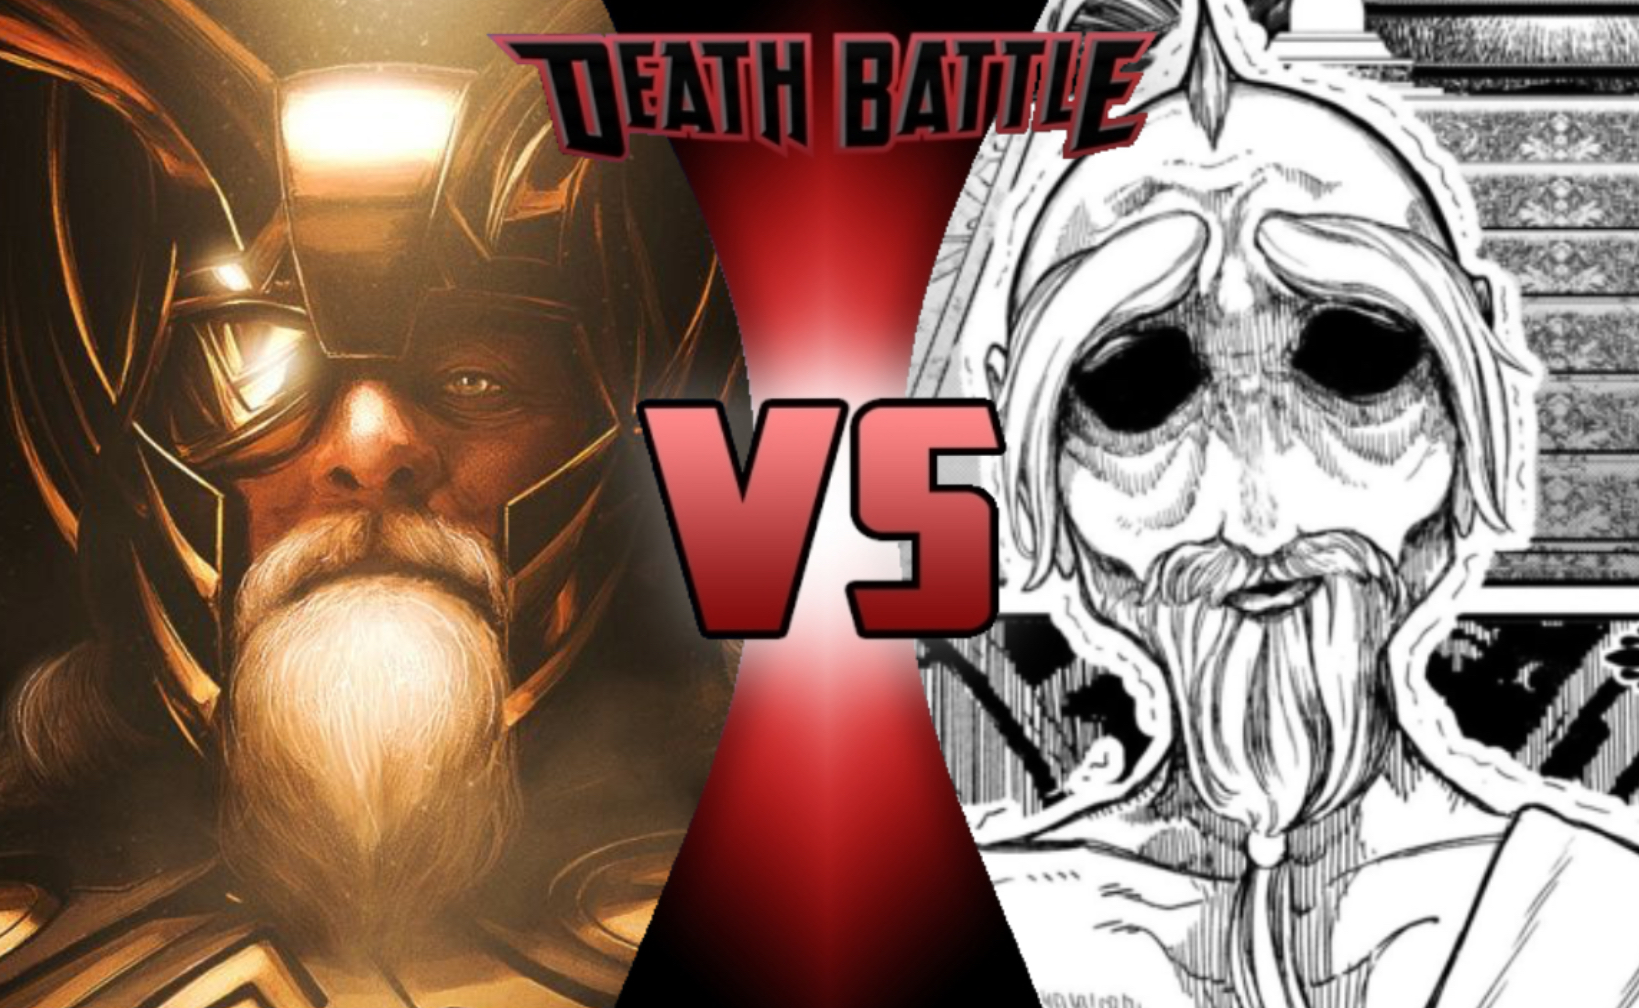 ZEUS VS ODIN: BATTLE OF THE GODS #1 